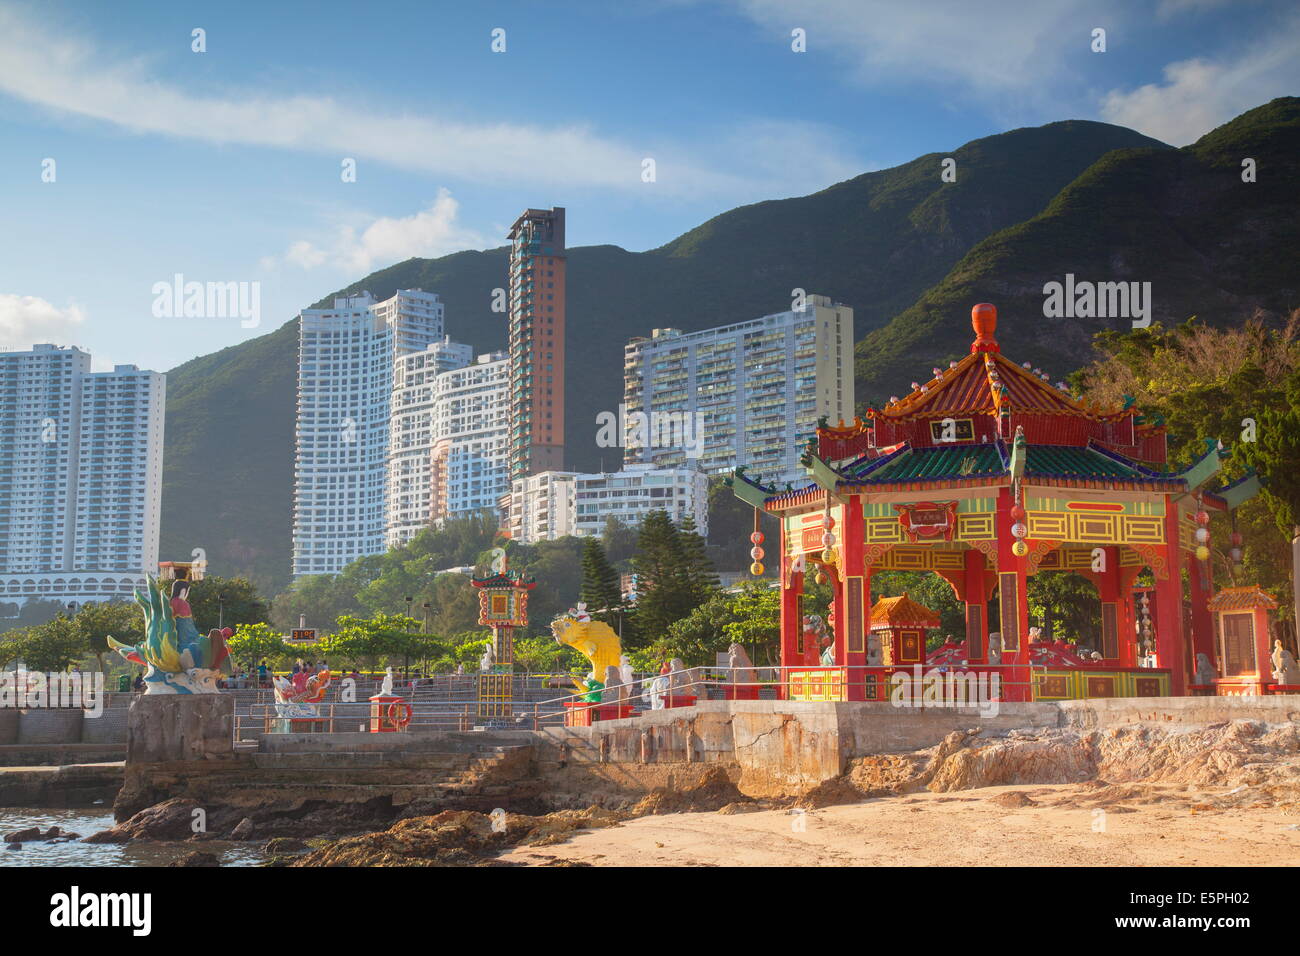 Tin Hau temple at Repulse Bay, Hong Kong Island, Hong Kong, China, Asia Stock Photo